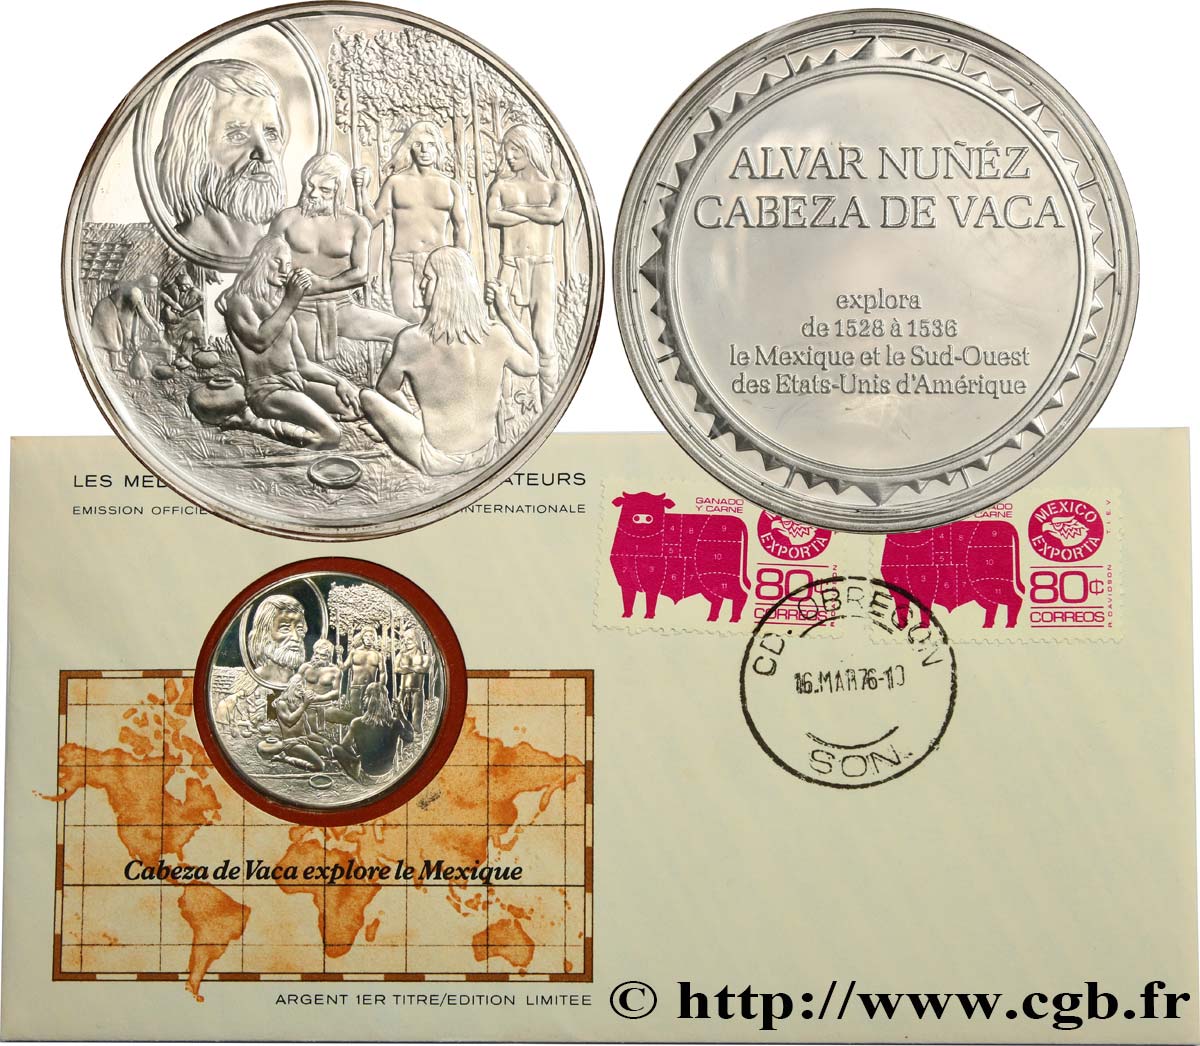 THE GREAT EXPLORERS  MEDALS Enveloppe “Timbre médaille”, Cabeza de Vaca explore le Mexique SC